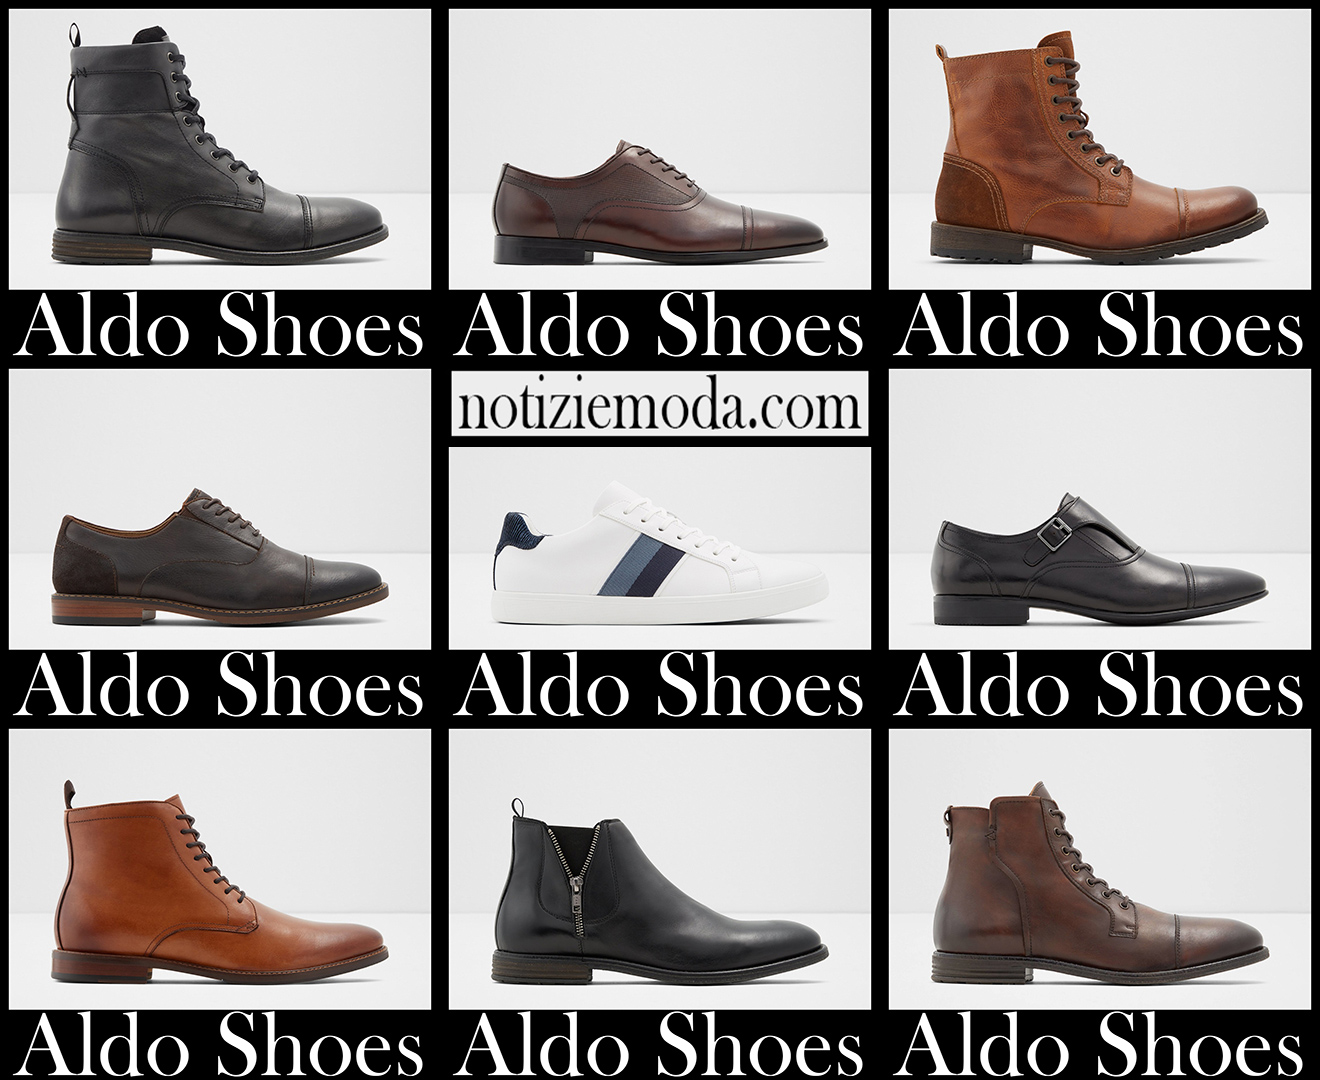 Nuovi arrivi scarpe Aldo 2021 calzature moda uomo